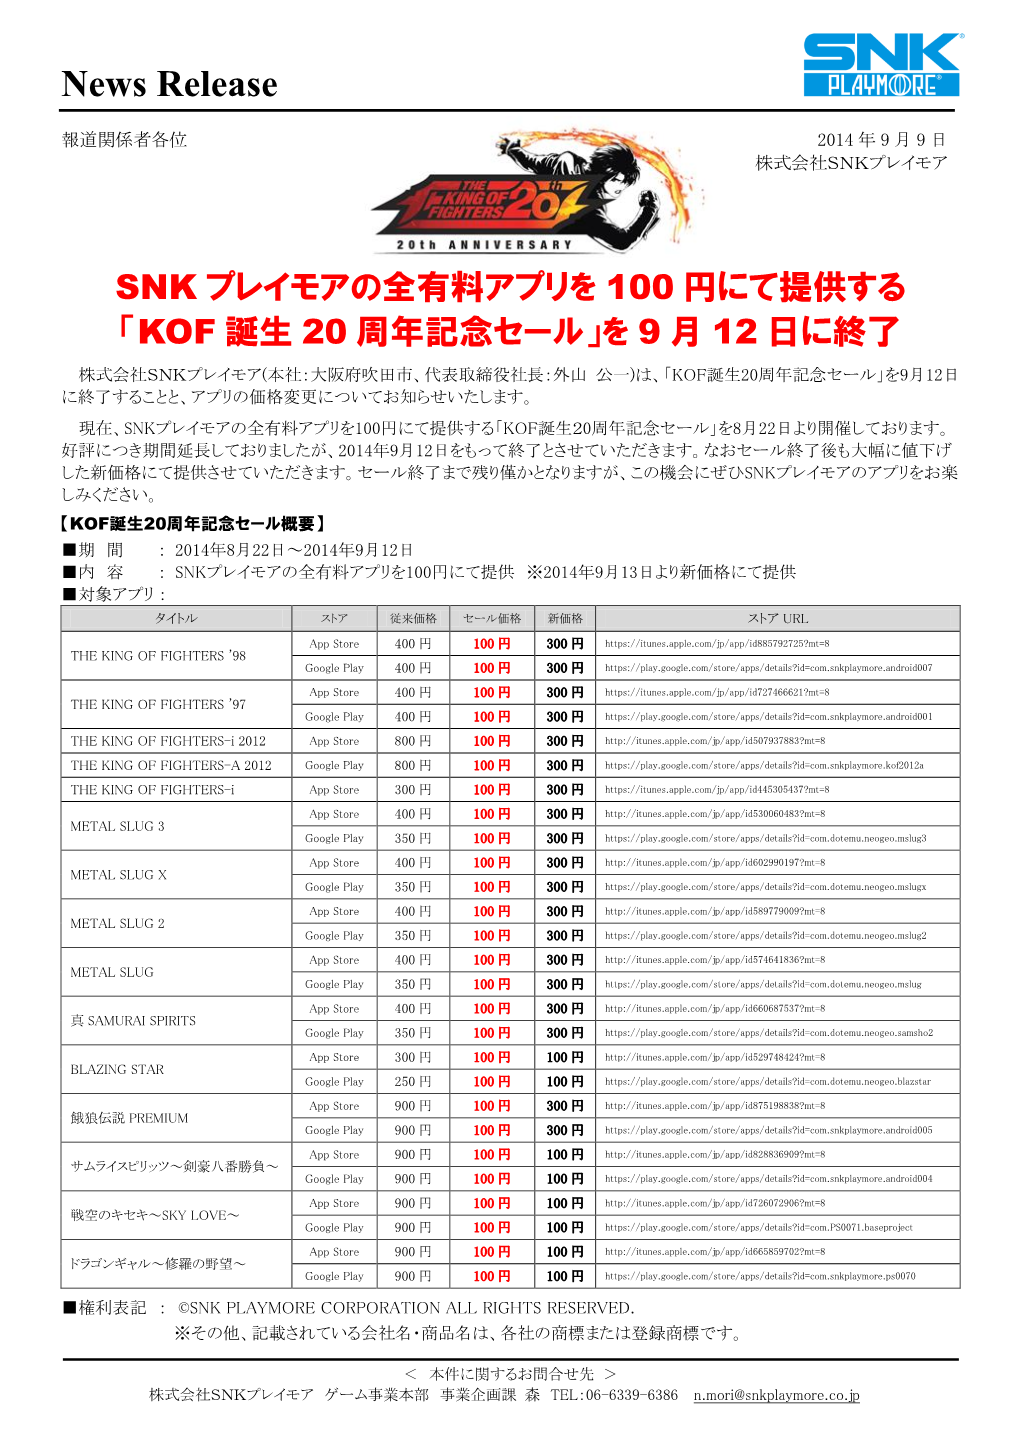 Snkプレイモアの全有料アプリを100円にて提供する「Kof誕生20周年